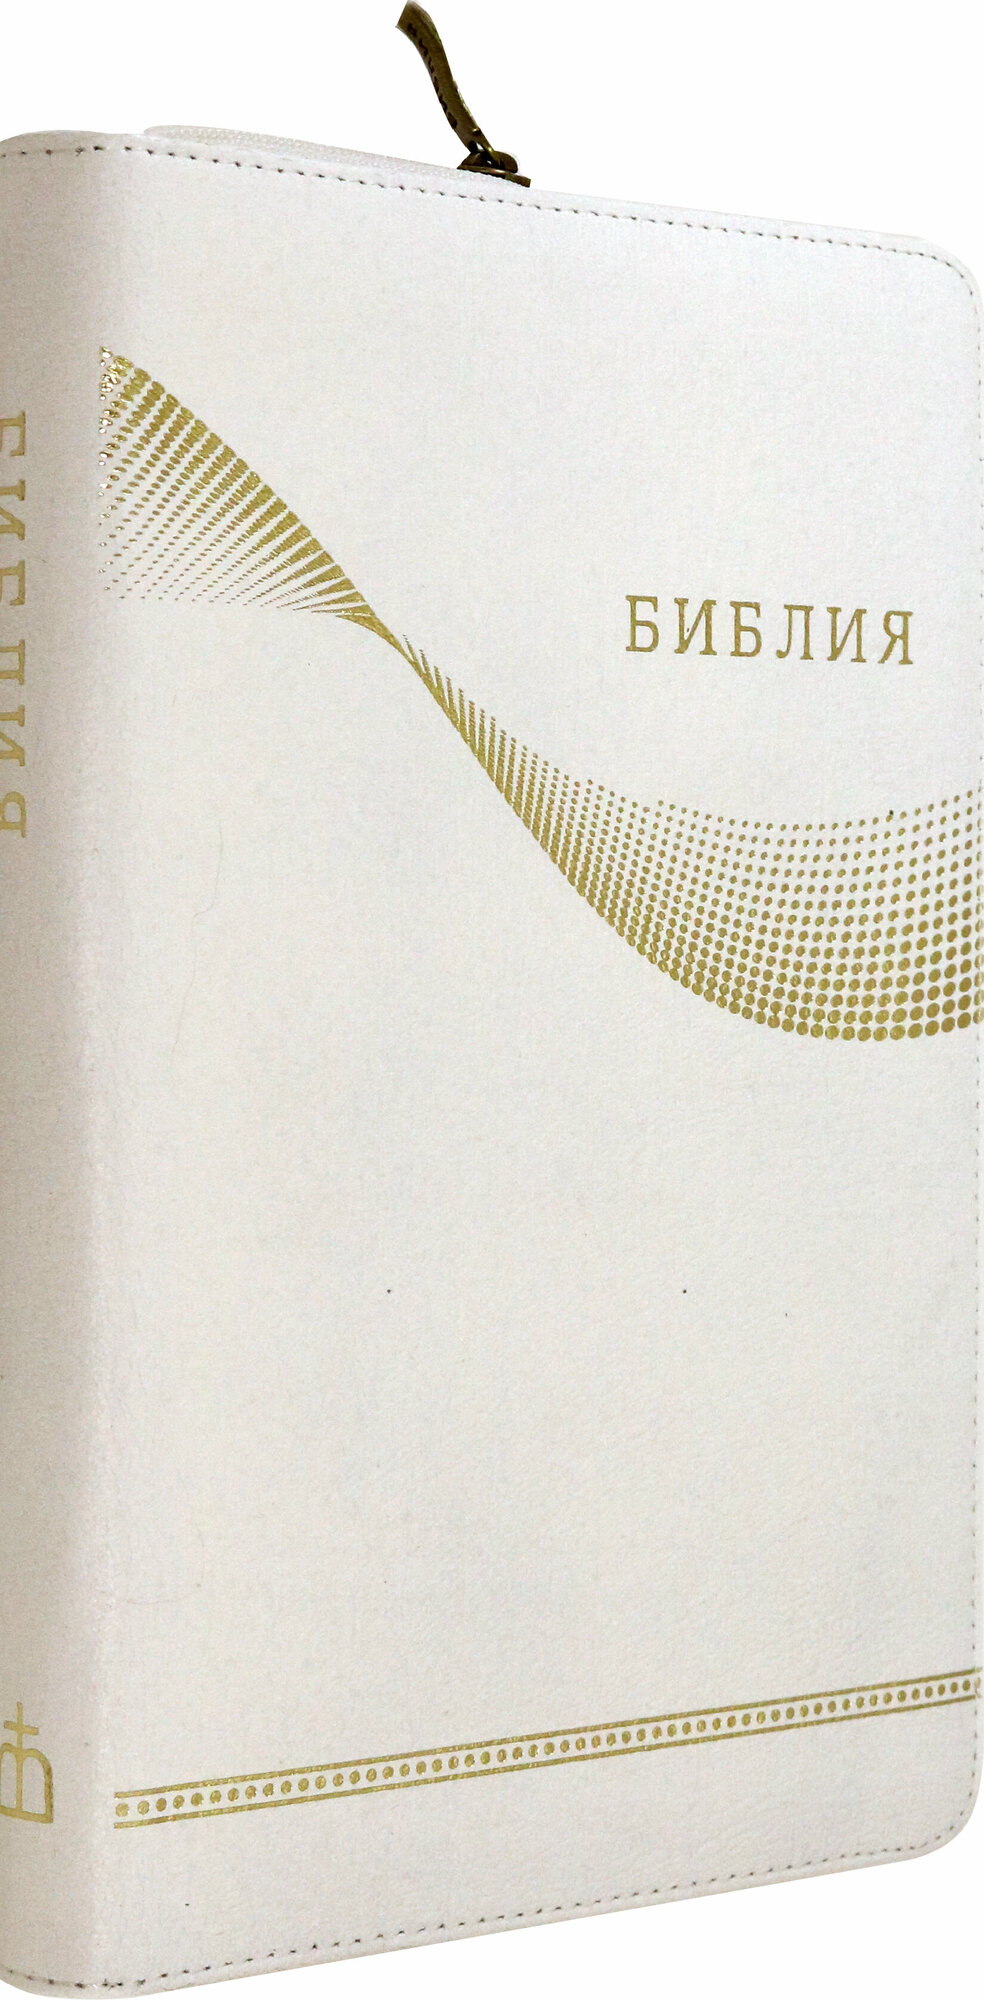 Библия кожаная белая золотой обрез ((1370)077Z) - фото №7